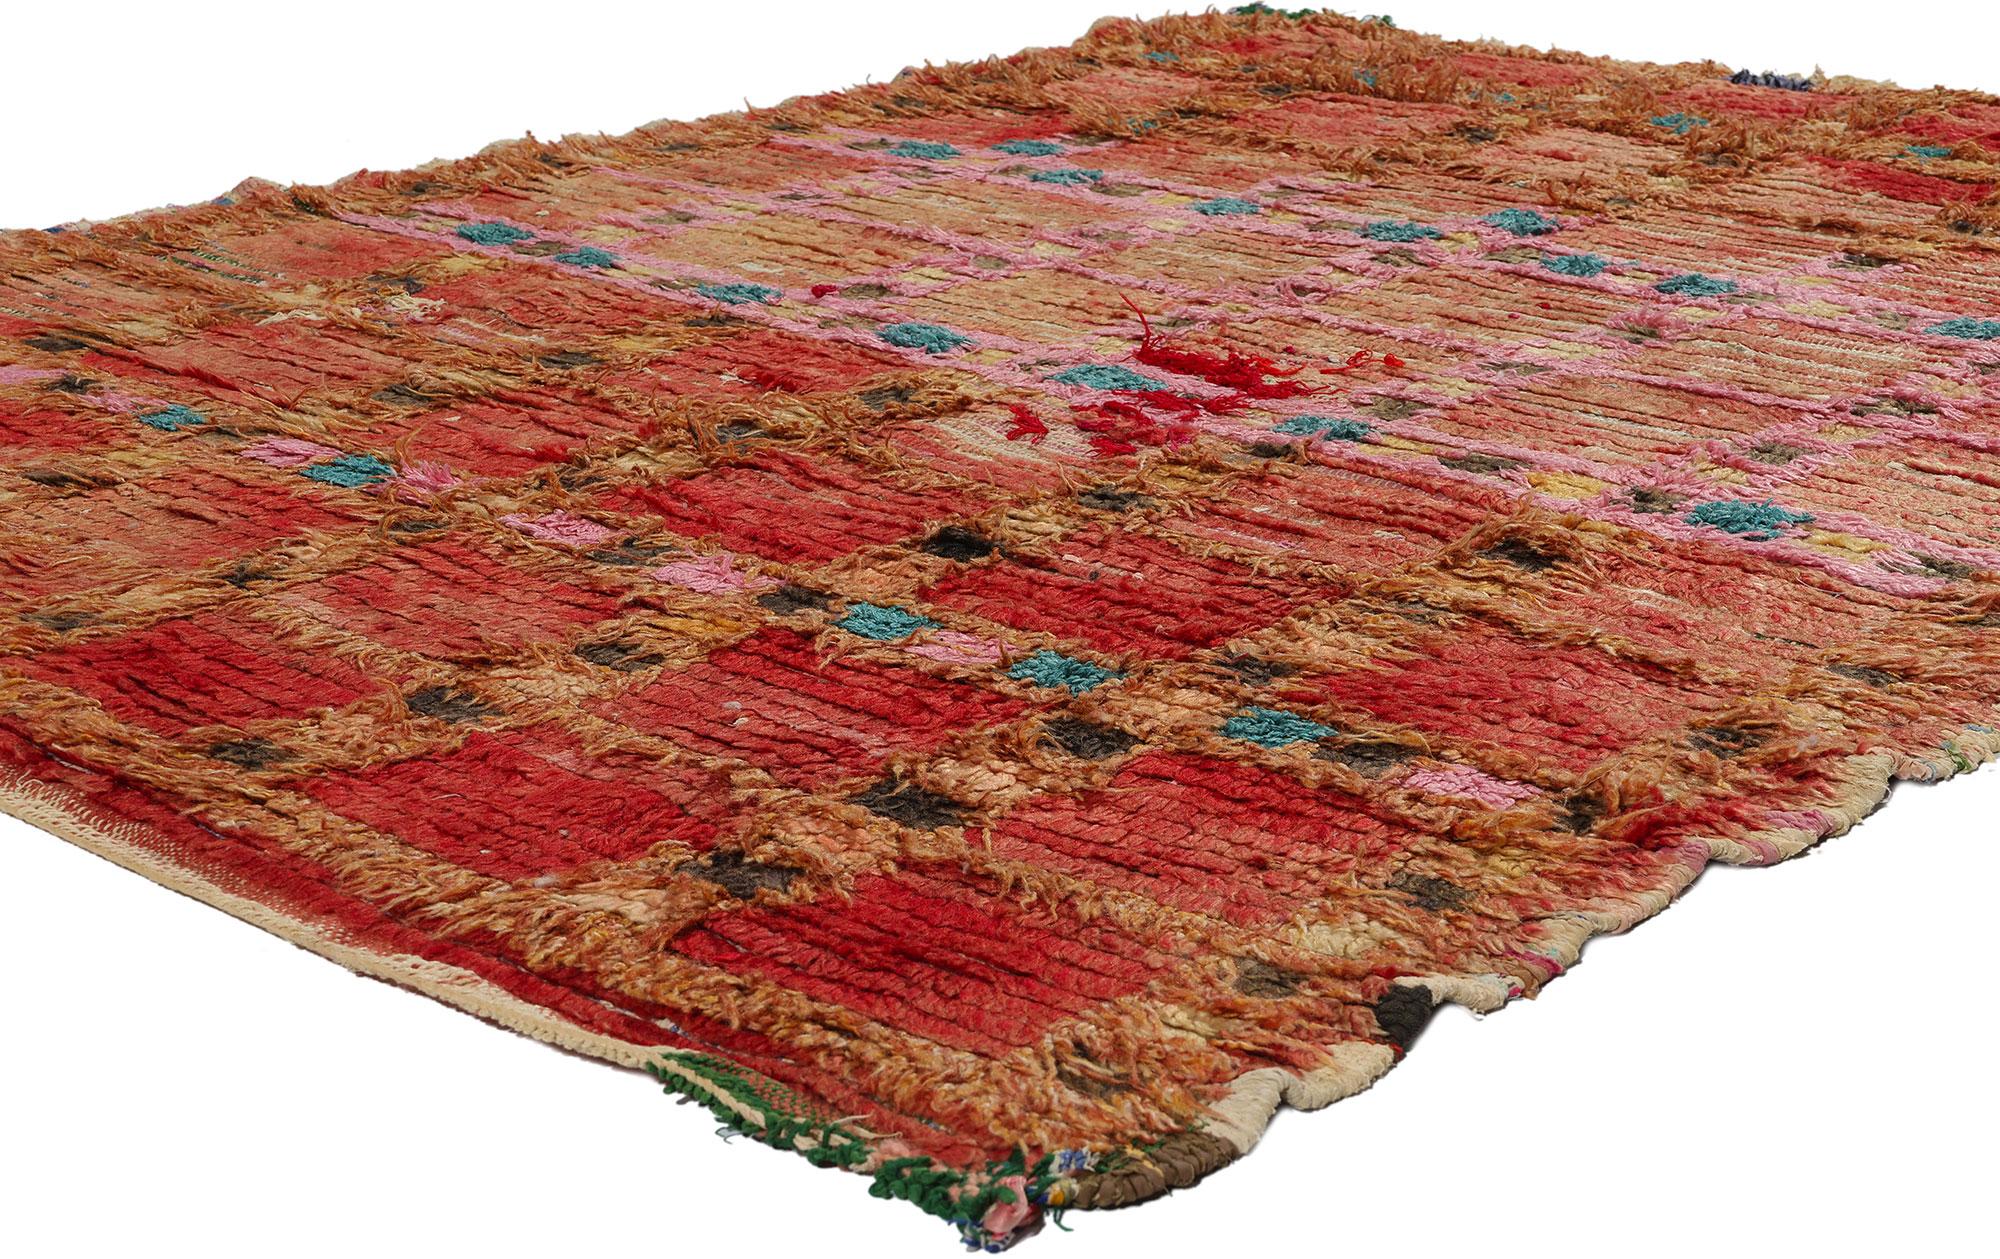 21723 Tapis marocain vintage rouge en azilal, 05'01 x 06'03. Les tapis marocains rouges Azilal sont des exemples prisés de l'artisanat marocain traditionnel, méticuleusement fabriqués à la main par des artisans berbères qualifiés de la région